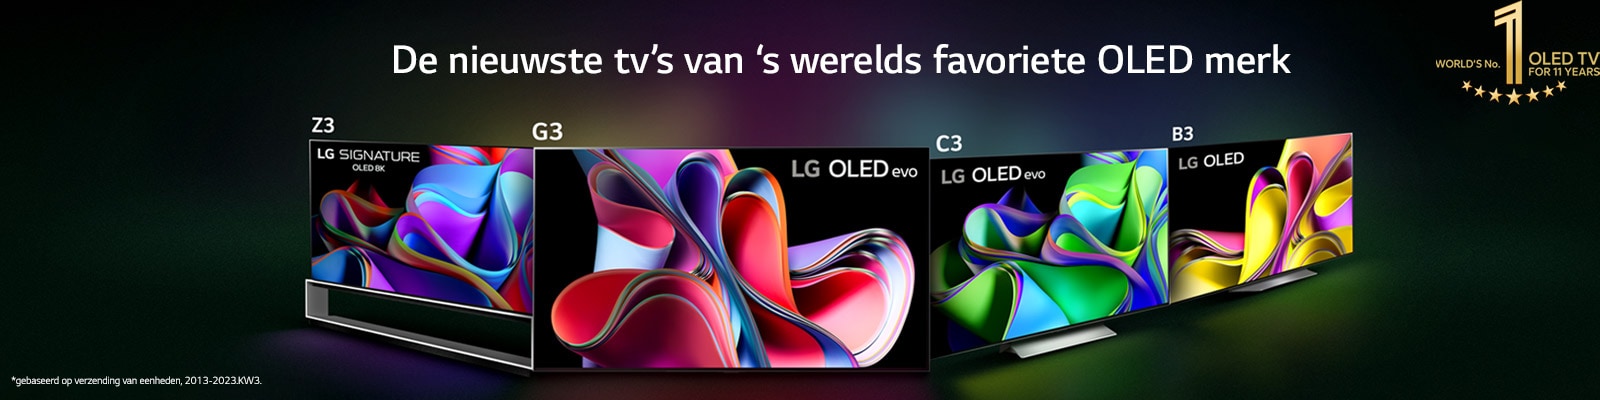 4 LG OLED televisies naast elkaar met abstracte kunst op het beeldscherm. De achtergrond is zwart